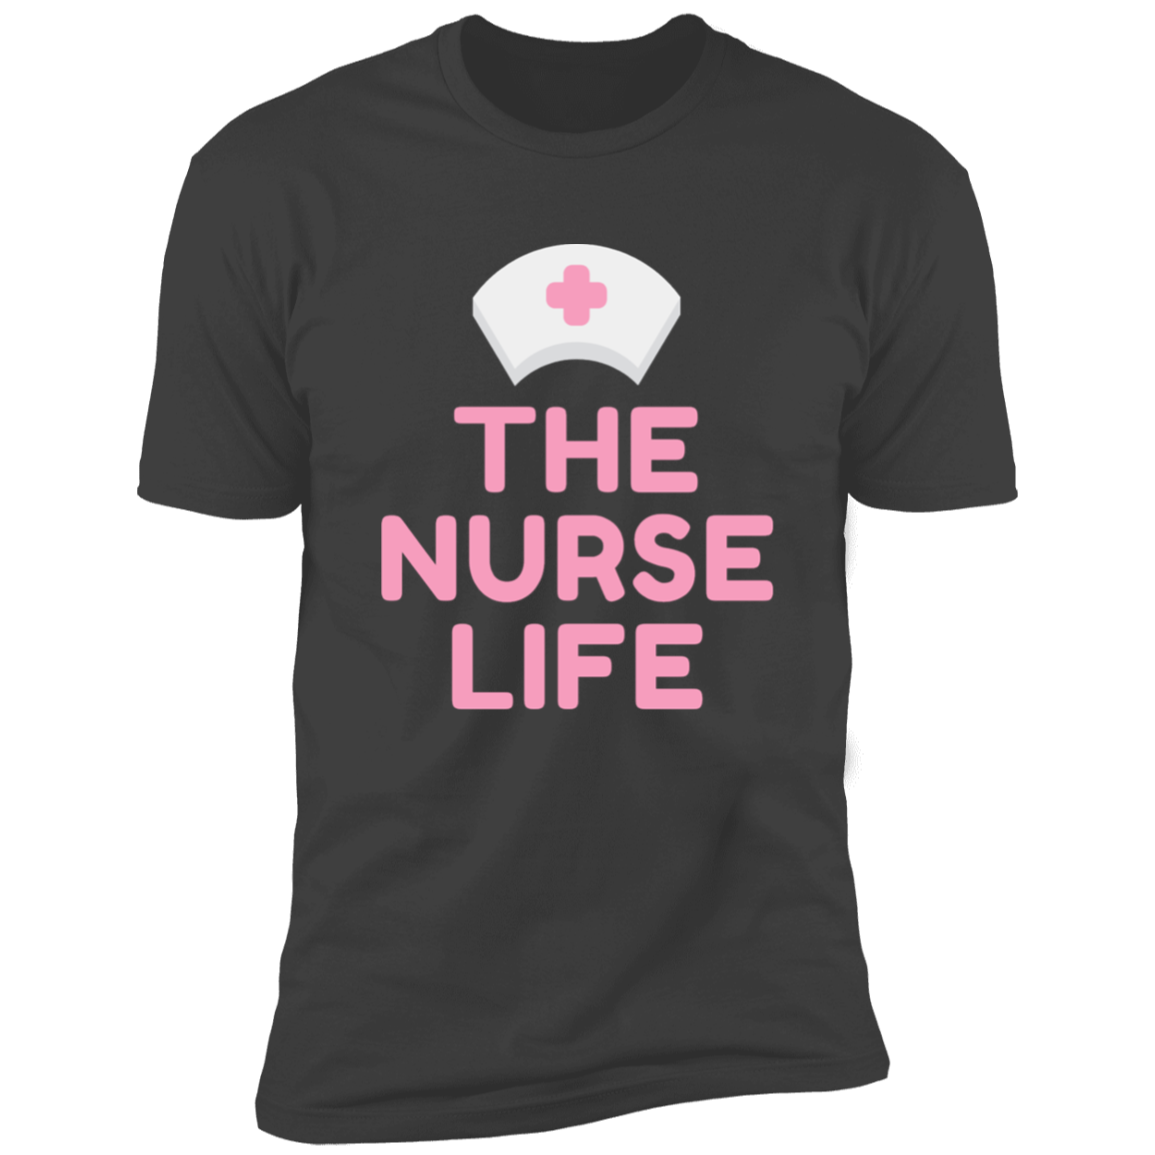 The Nurse Life Premium Short Sleeve Tee